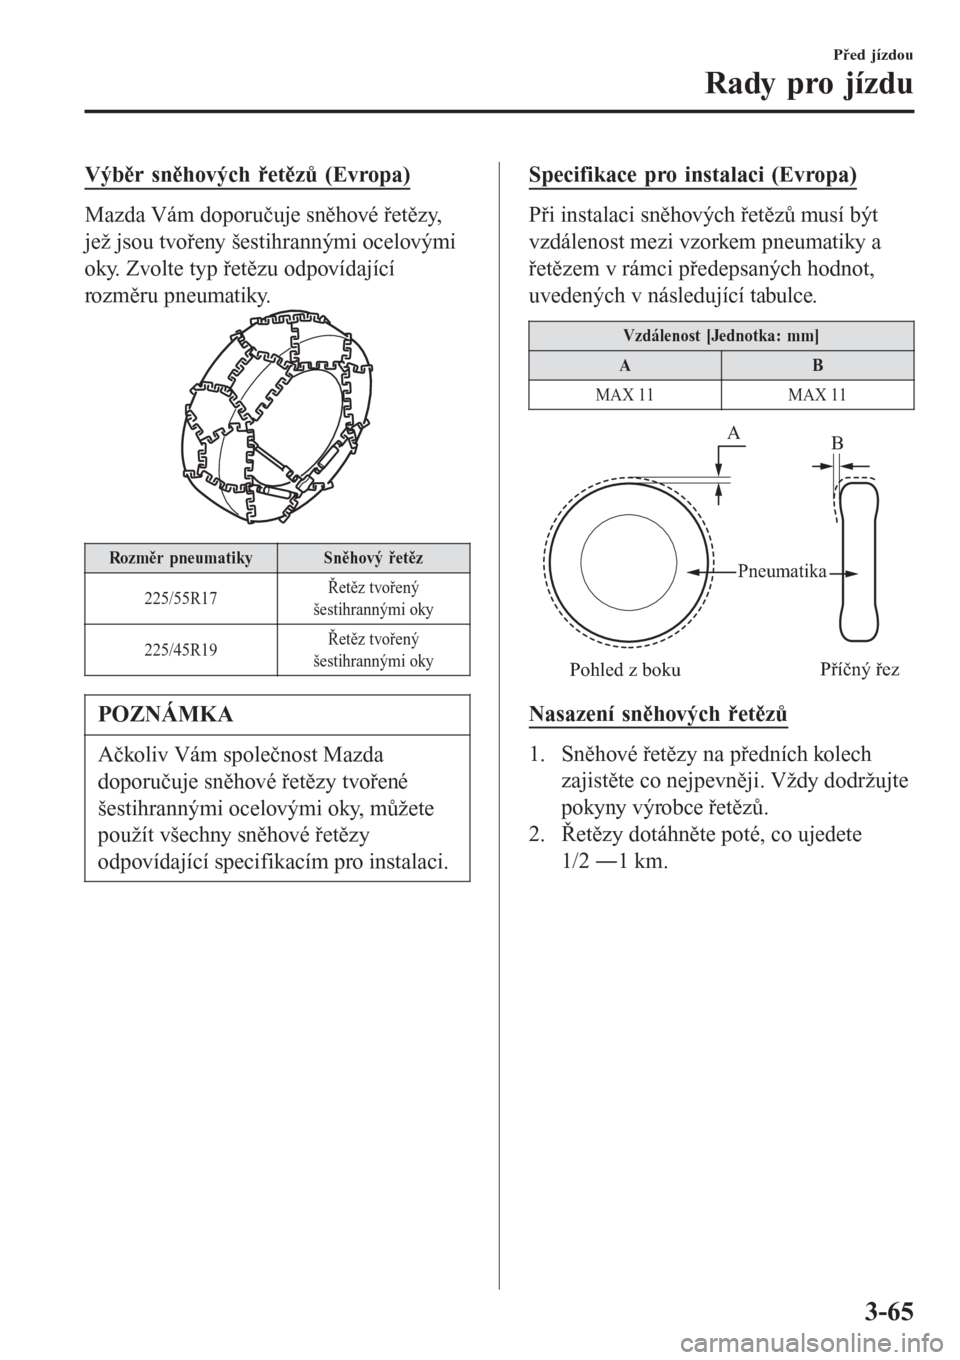 MAZDA MODEL 6 2016  Návod k obsluze (in Czech) Výběr sněhových řetězů (Evropa)
Mazda Vám doporučuje sněhové řetězy,
jež jsou tvořeny šestihrannými ocelovými
oky. Zvolte typ řetězu odpovídající
rozměru pneumatiky.
Rozměr pn